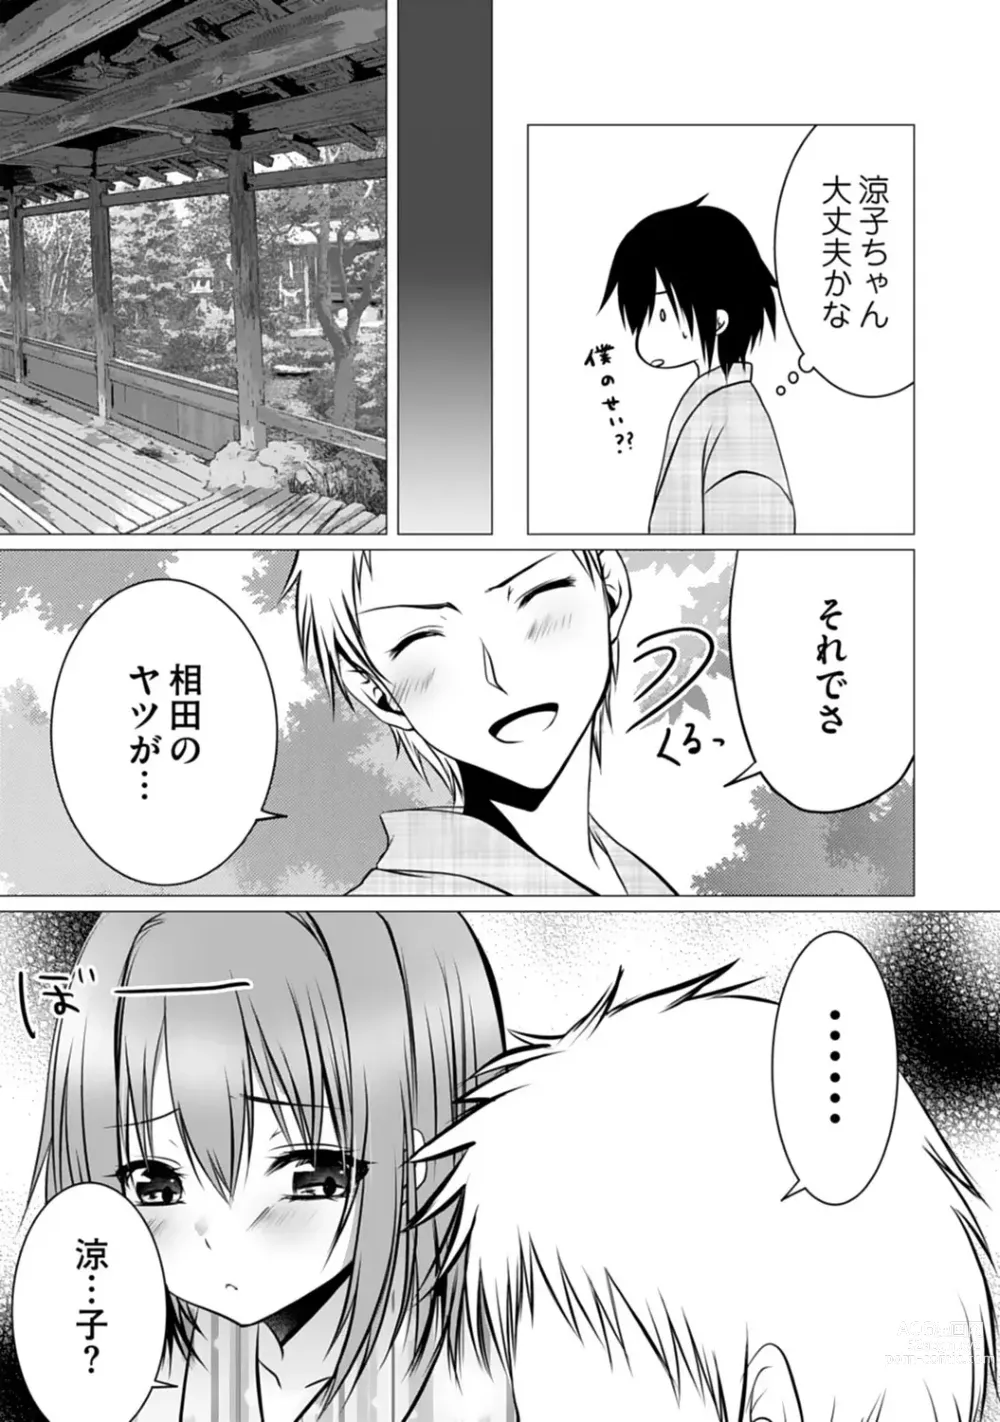 Page 100 of manga Bocchi no Boku demo, Kuzu no Yarichin ni Nareru tte Honto desu ka?